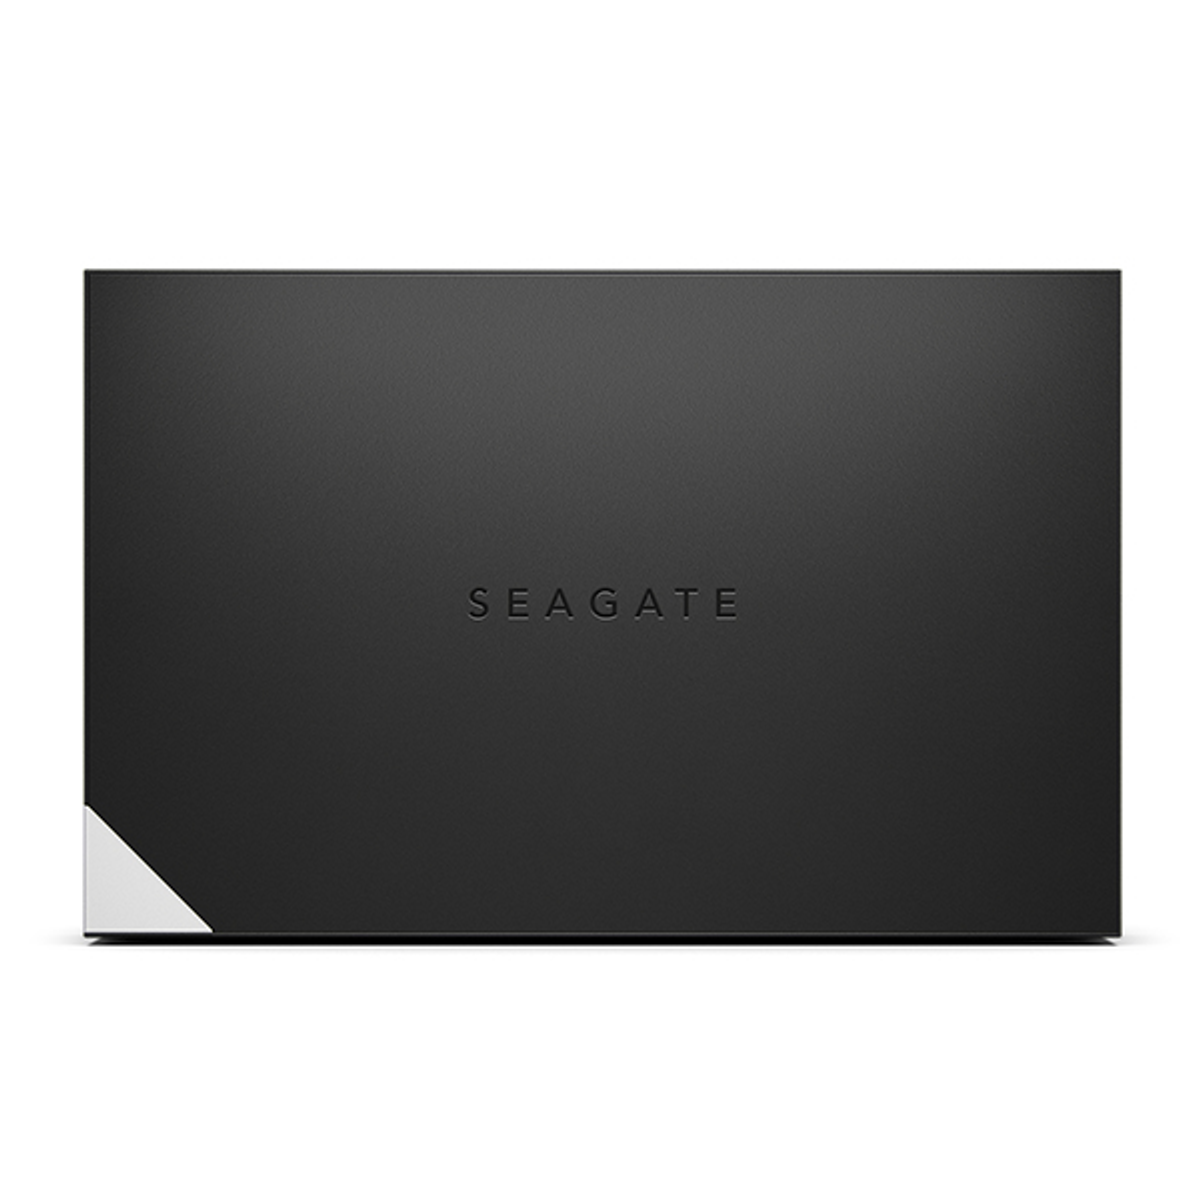 SEAGATE STLC4000400, extern, TB Schwarz Zoll, 4 HDD, 3,5